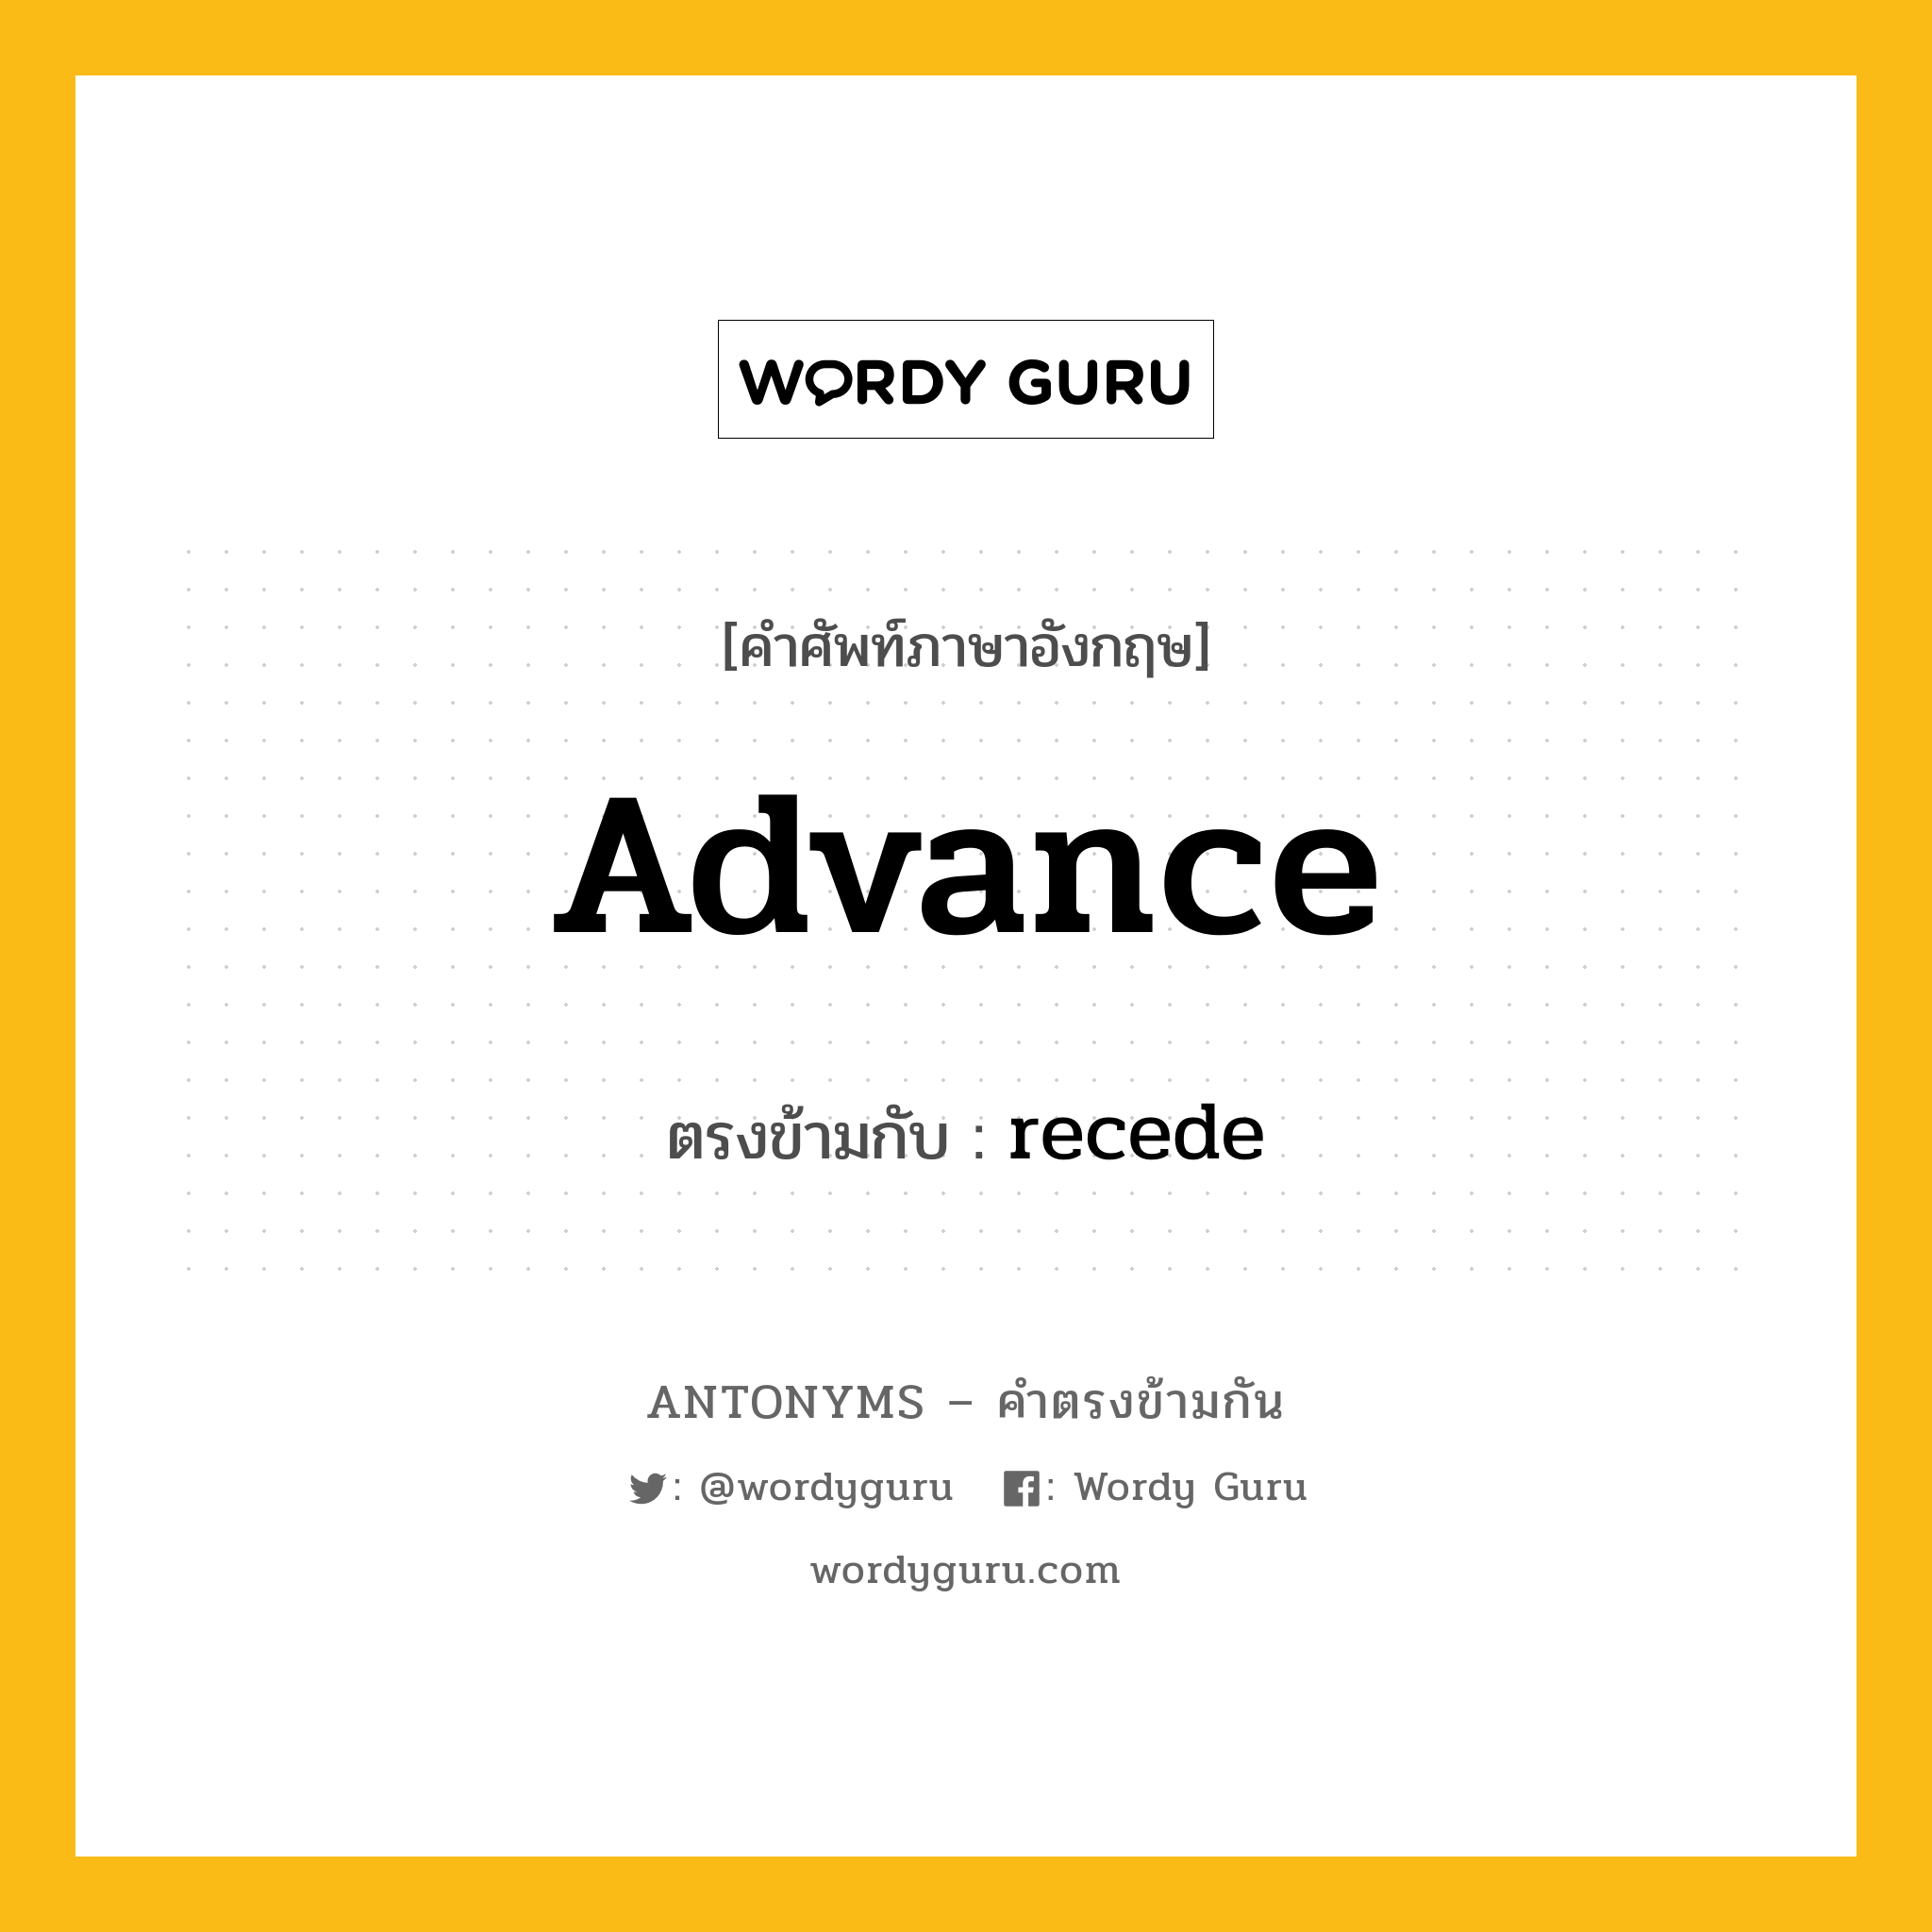 advance เป็นคำตรงข้ามกับคำไหนบ้าง?, คำศัพท์ภาษาอังกฤษ advance ตรงข้ามกับ recede หมวด recede